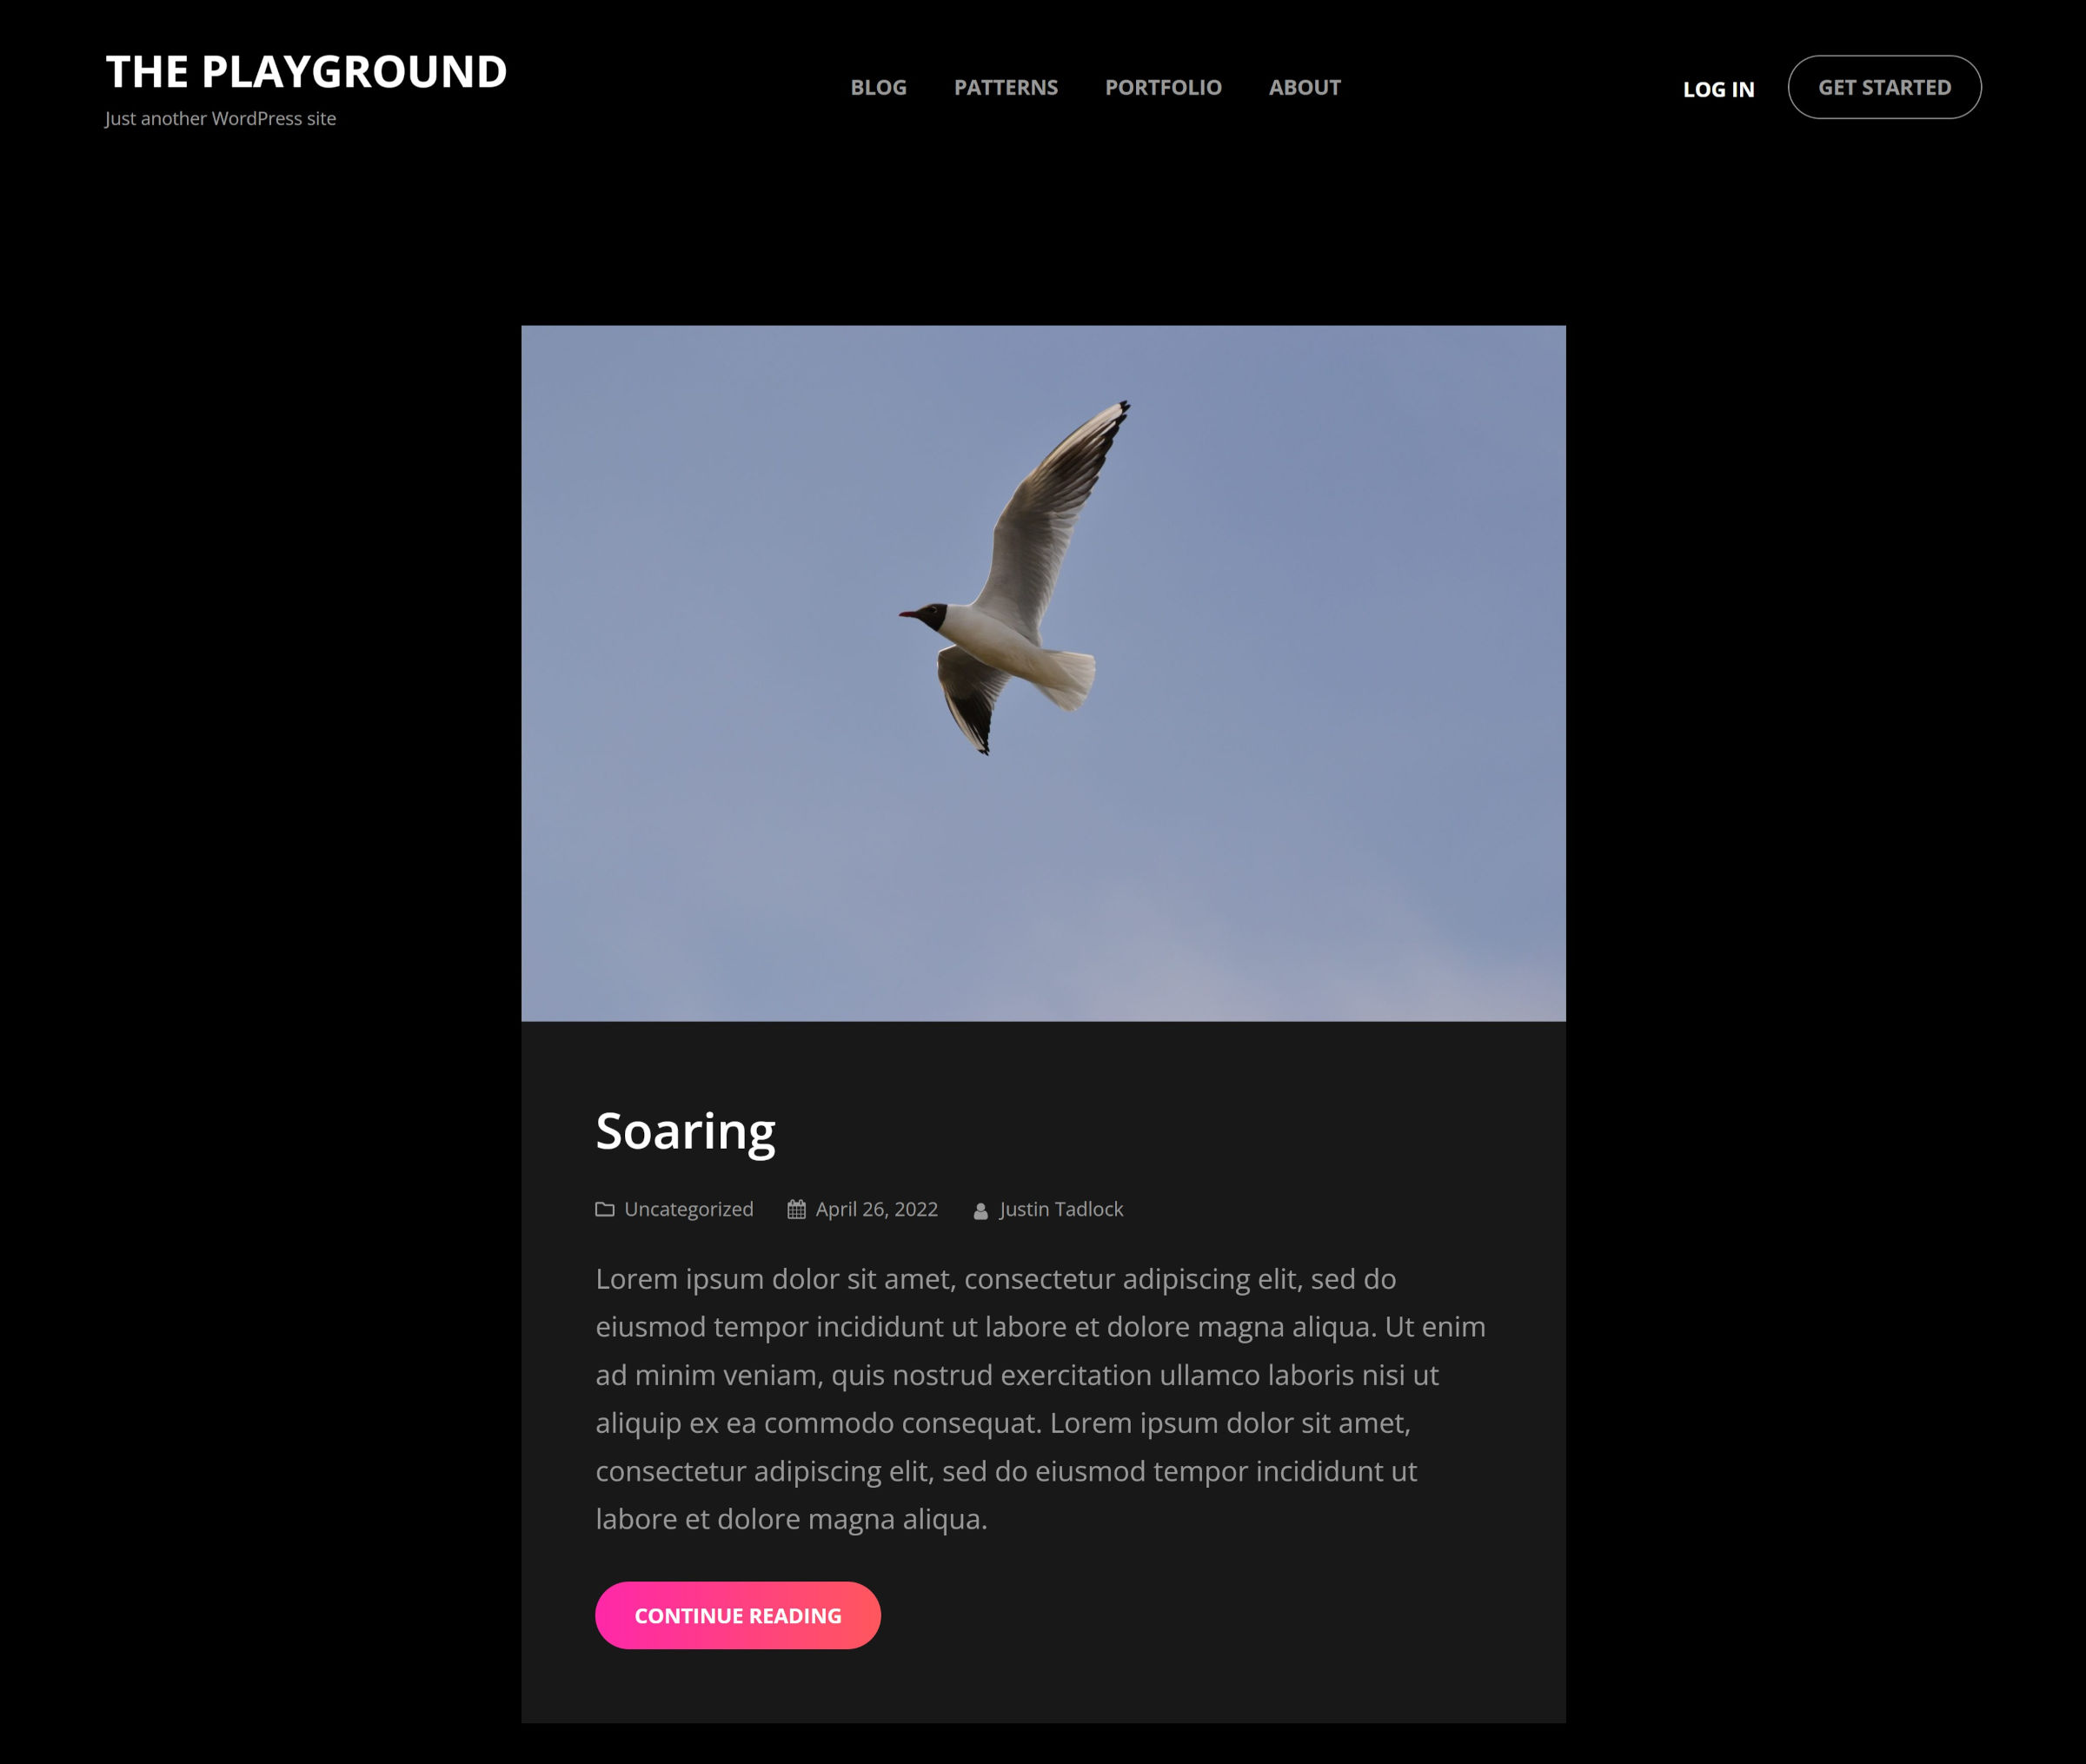 Dunkles WordPress-Theme-Design, das eine Kopfzeile und einen Blogpost-Auszug mit dem Bild eines Vogels anzeigt.